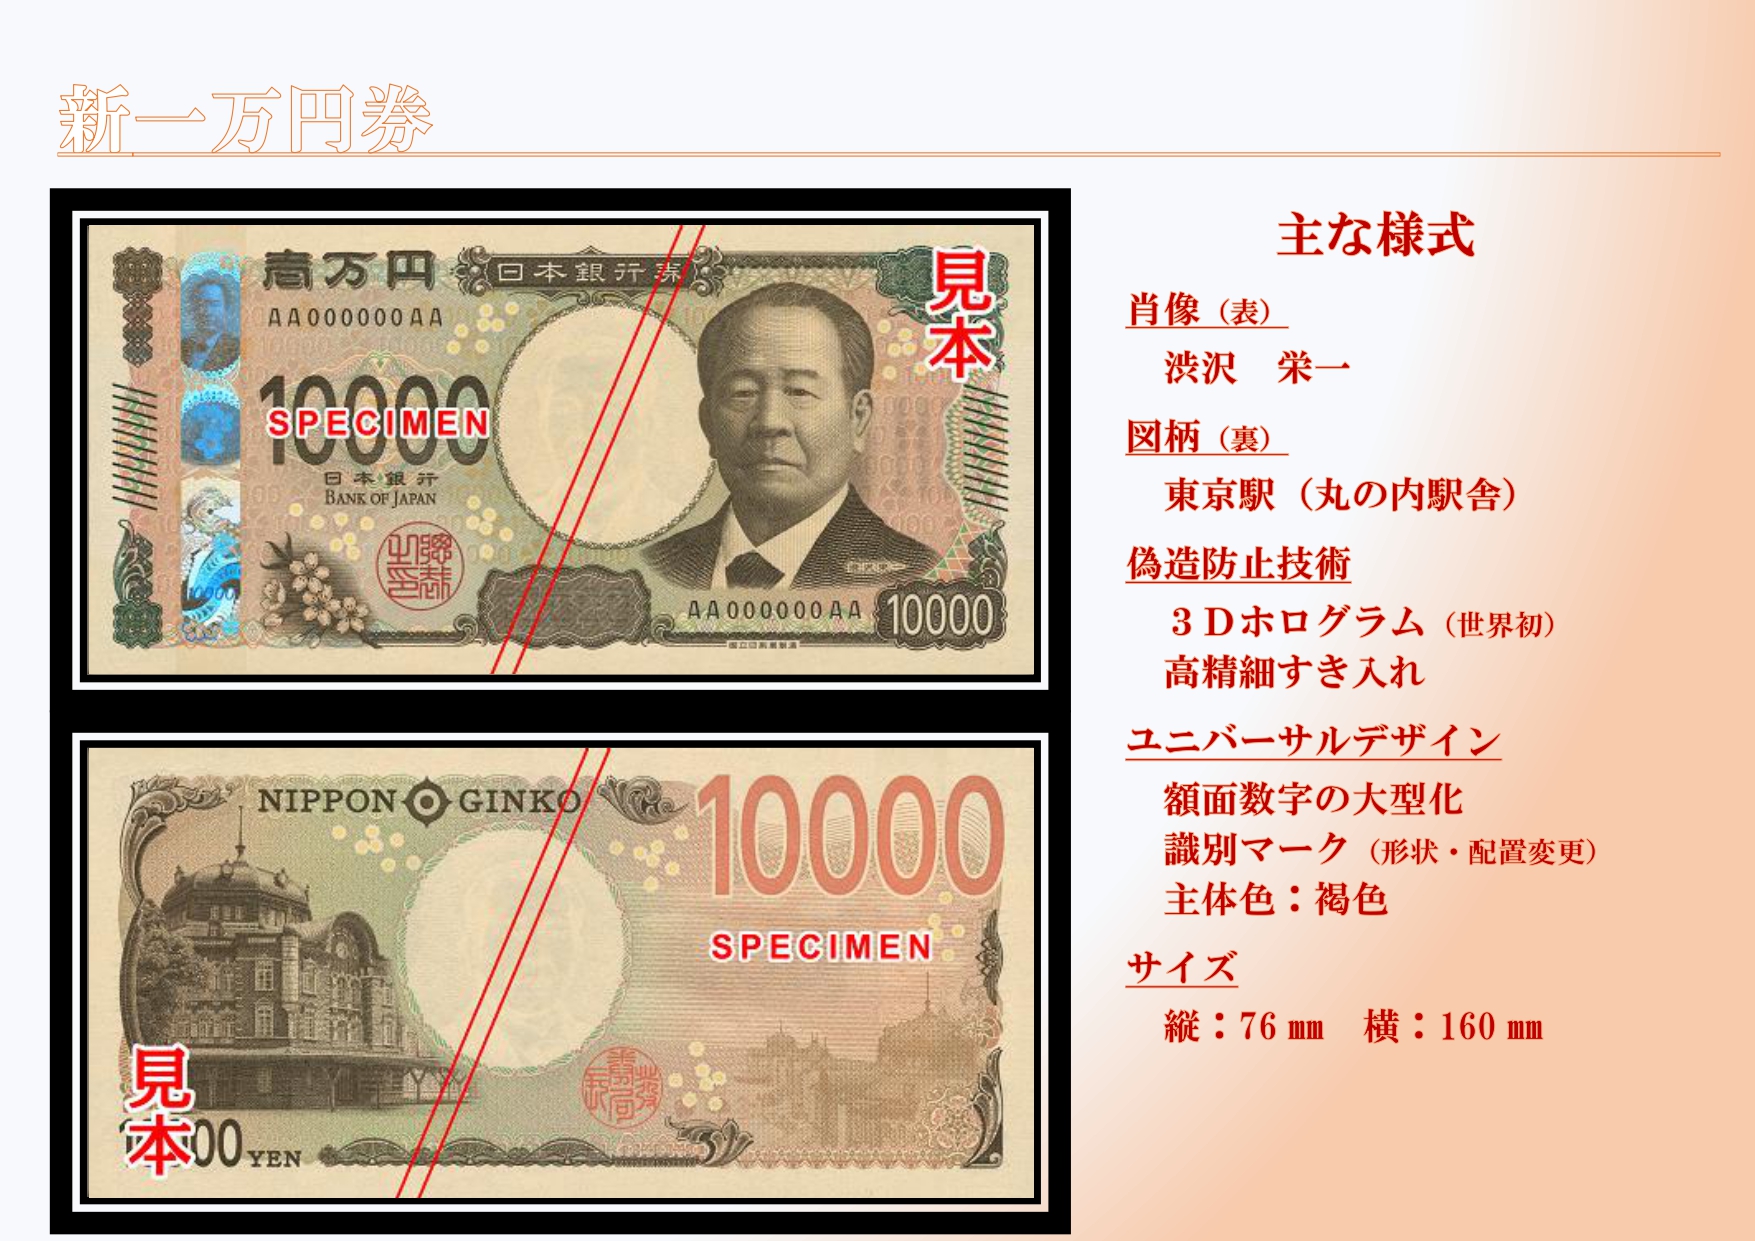 日銀 新1万円札を公開 渋沢栄一が浮かび上がる3dホログラム採用 偽造防止に Itmedia News